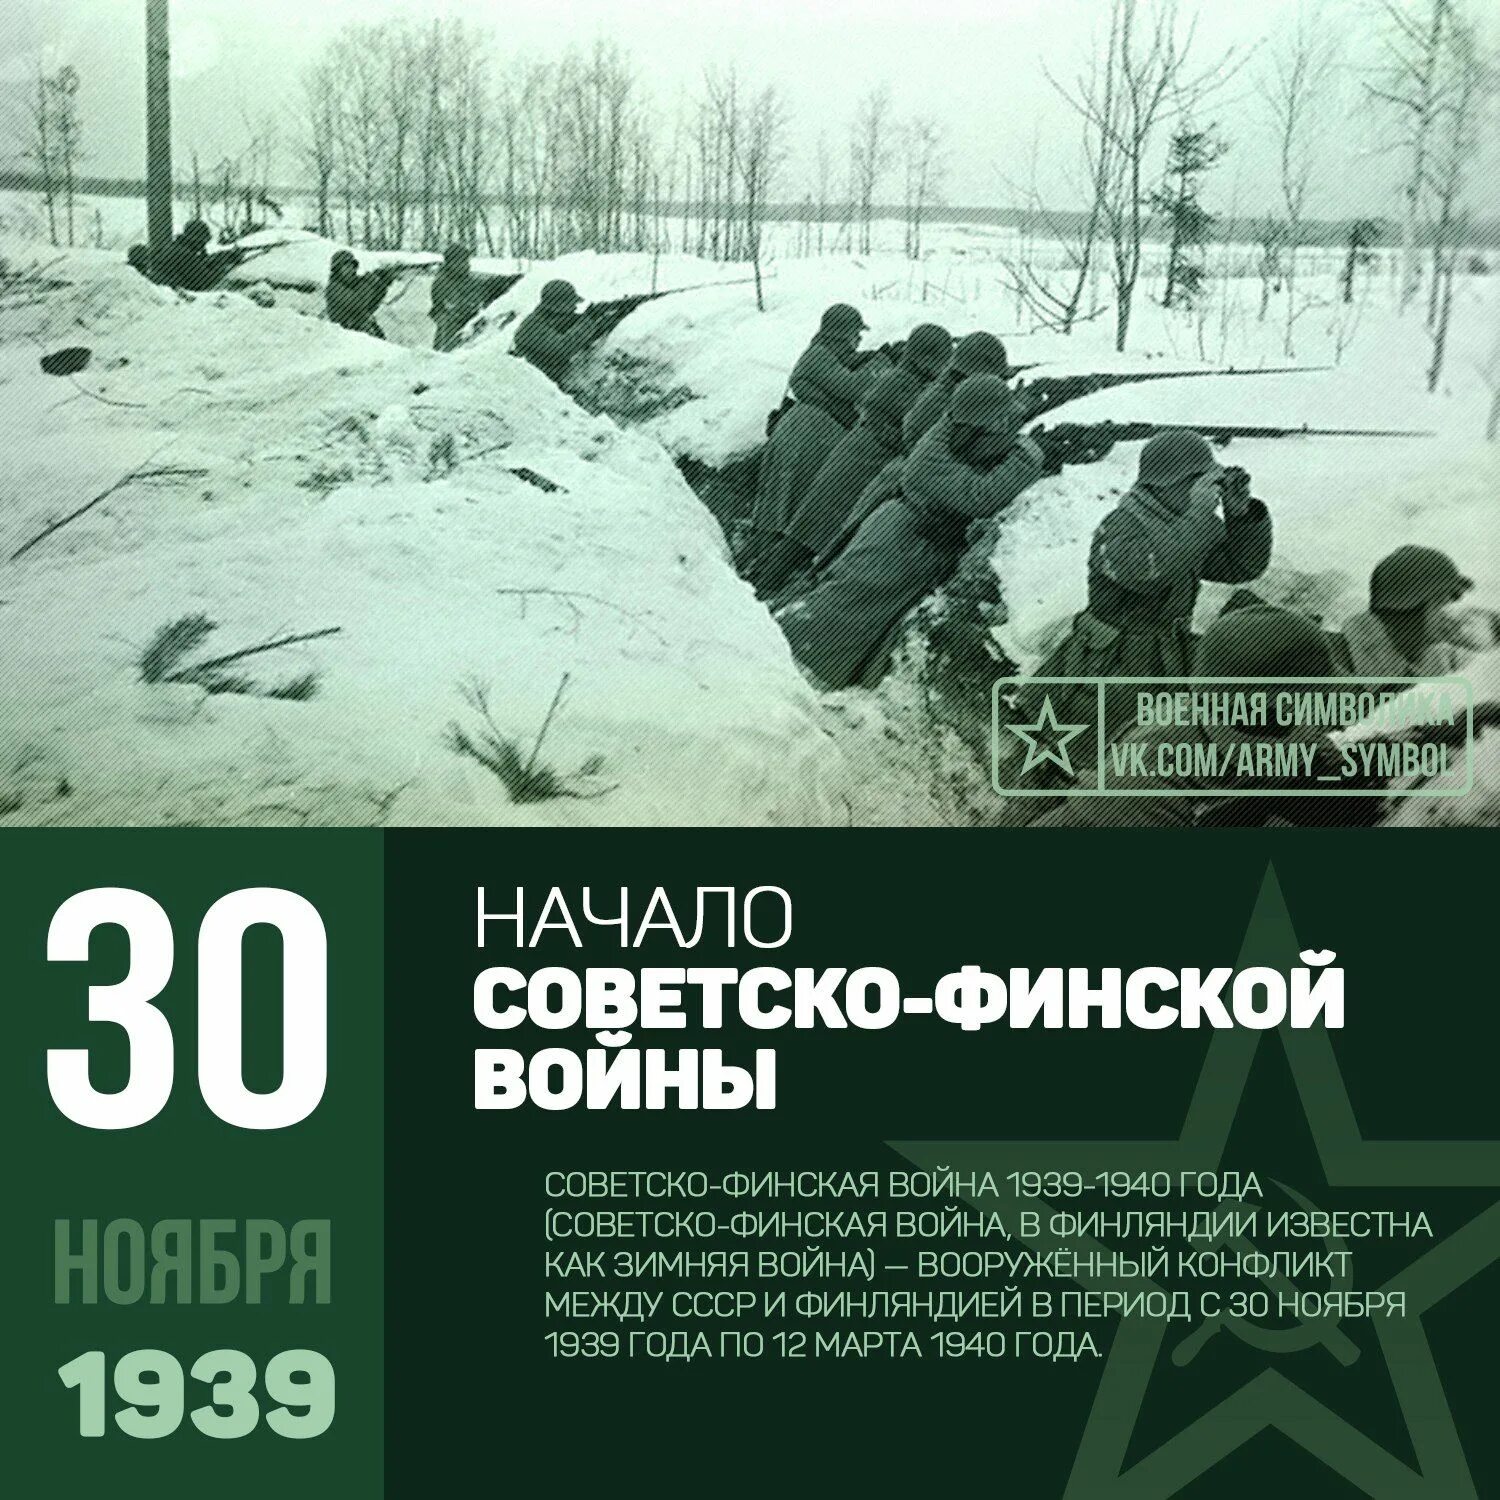 11 30 30 ноября. 30 Ноября 1939 начало советско-финской войны. Советско-финская война 30 ноября 1939 г 12 марта 1940 г началась. 30 Ноября 1939 года началась советско-финская война («зимняя война»). Советско финская война 30 ноября 1939.